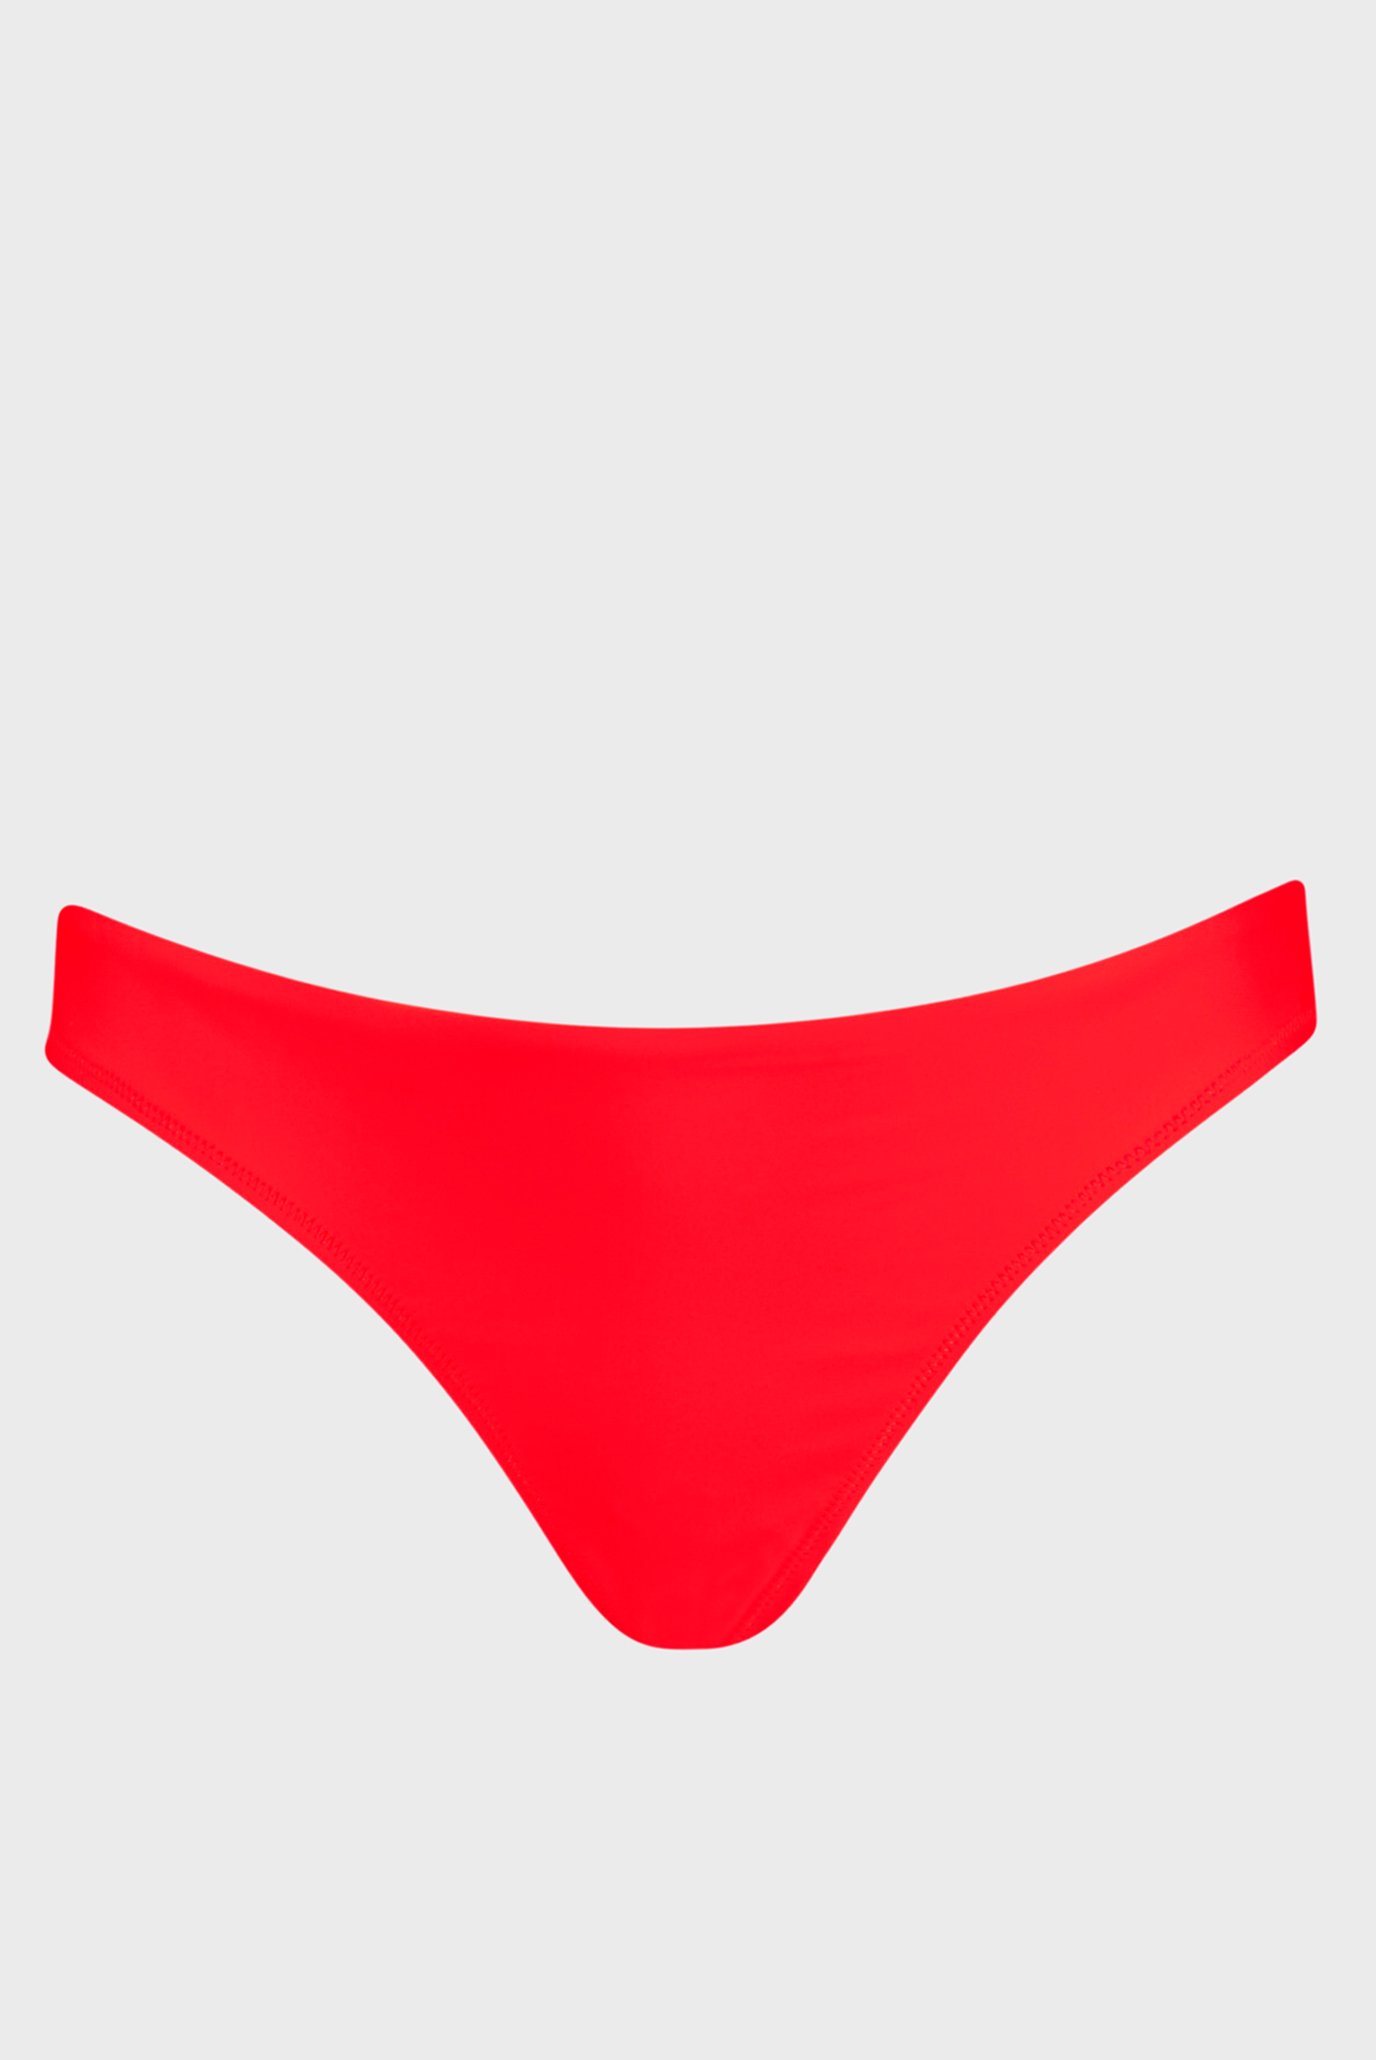 Женские красные трусики от купальника PUMA Women's Brazilian Swim Bottoms 1